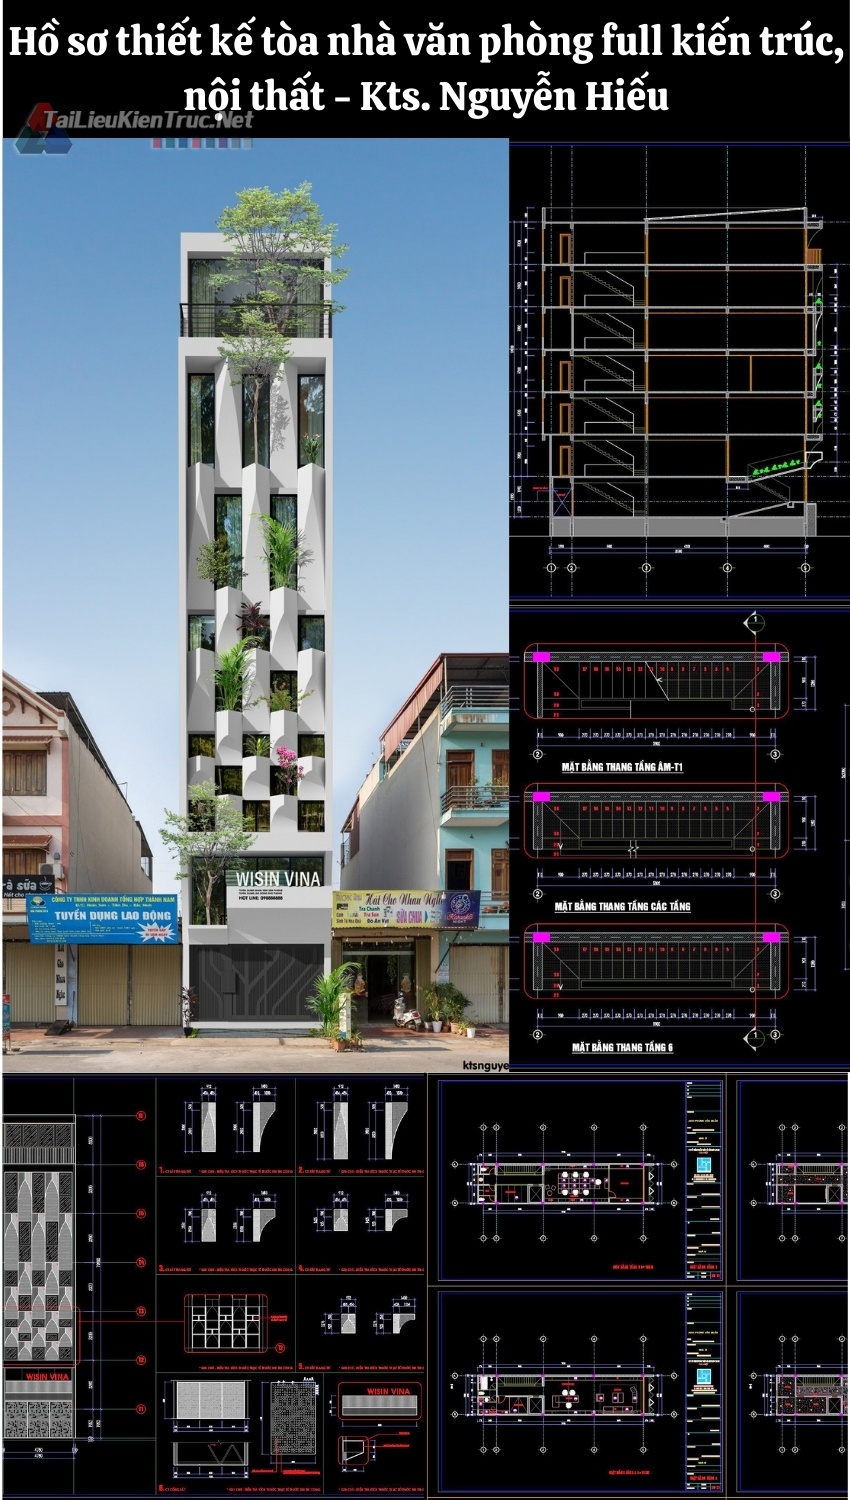 Hồ sơ thiết kế tòa nhà văn phòng diện tích 5x22m Kts. Nguyễn Hiếu